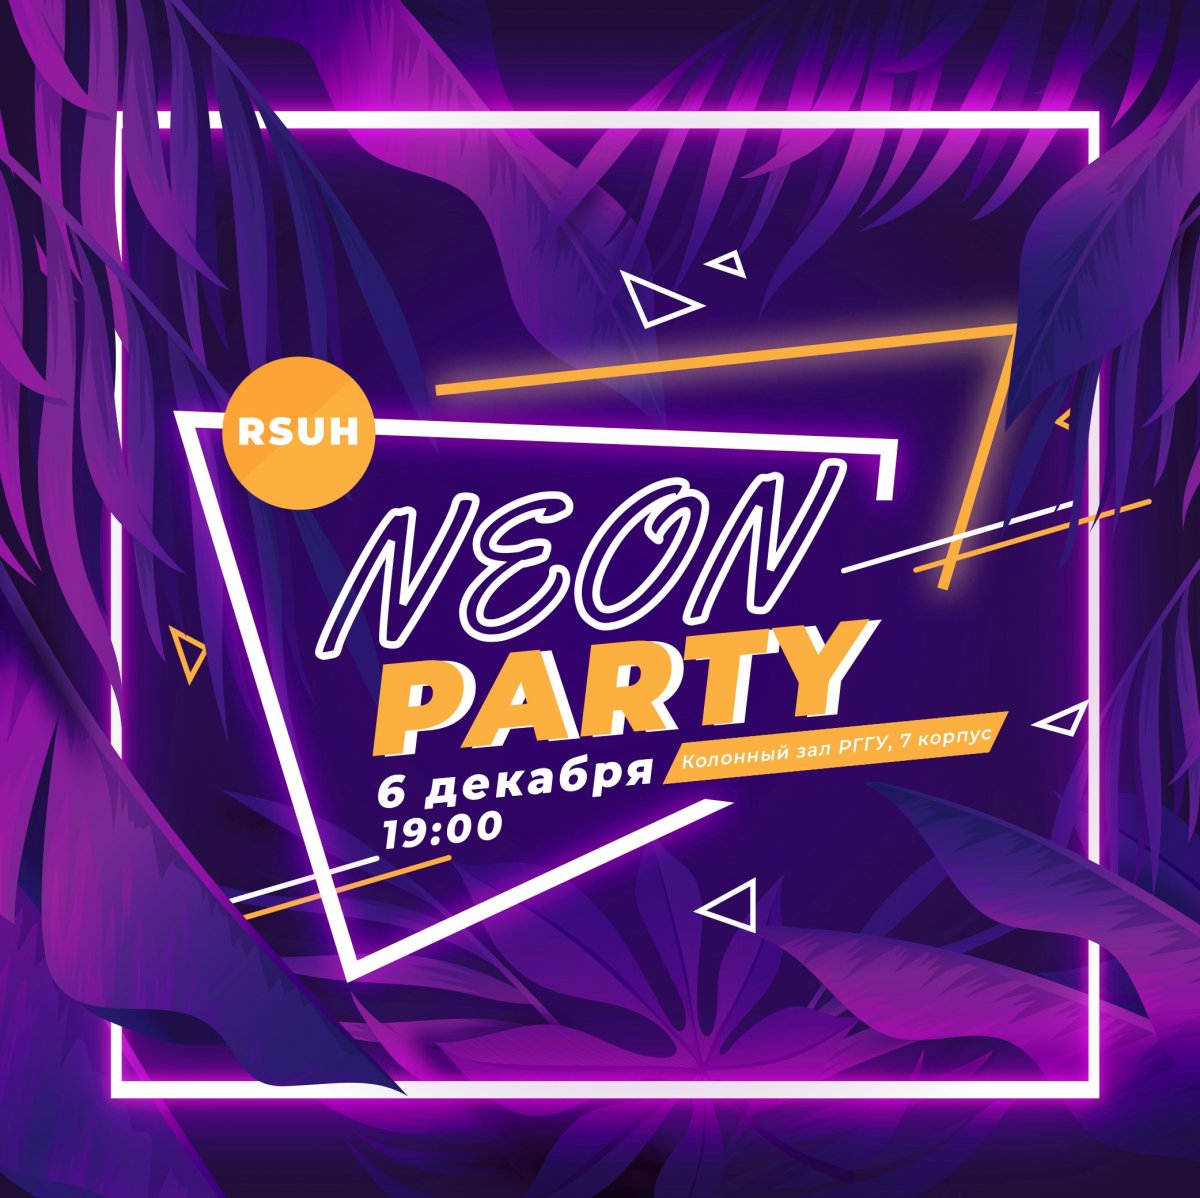 ⚡ Грядет крутейшая предновогодняя вечеринка в неоновом стиле - RSUH NEON PARTY 2019!